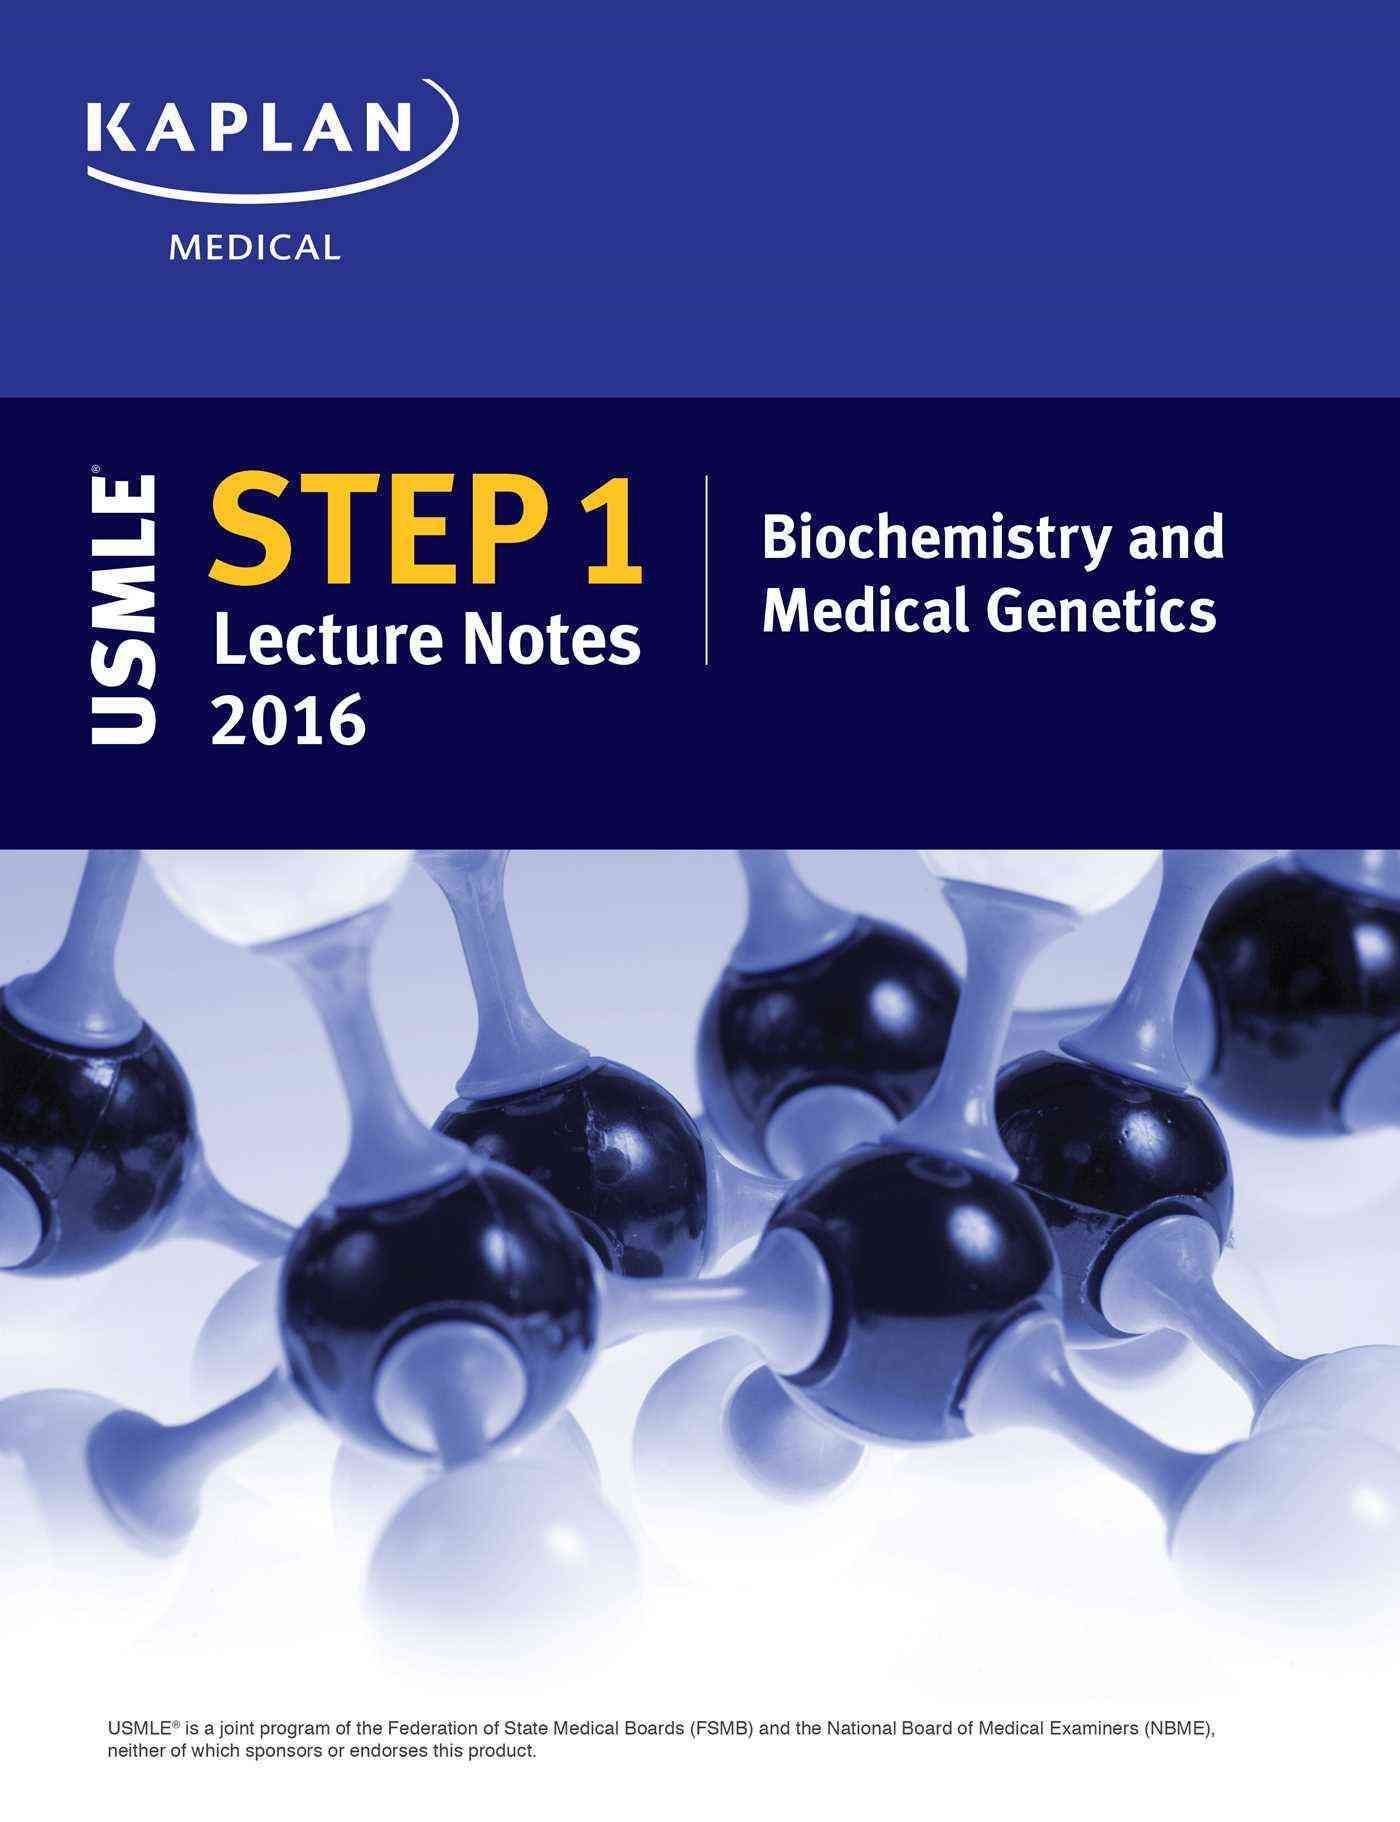 kaplan usmle step 1 videos 2014 biochemistry